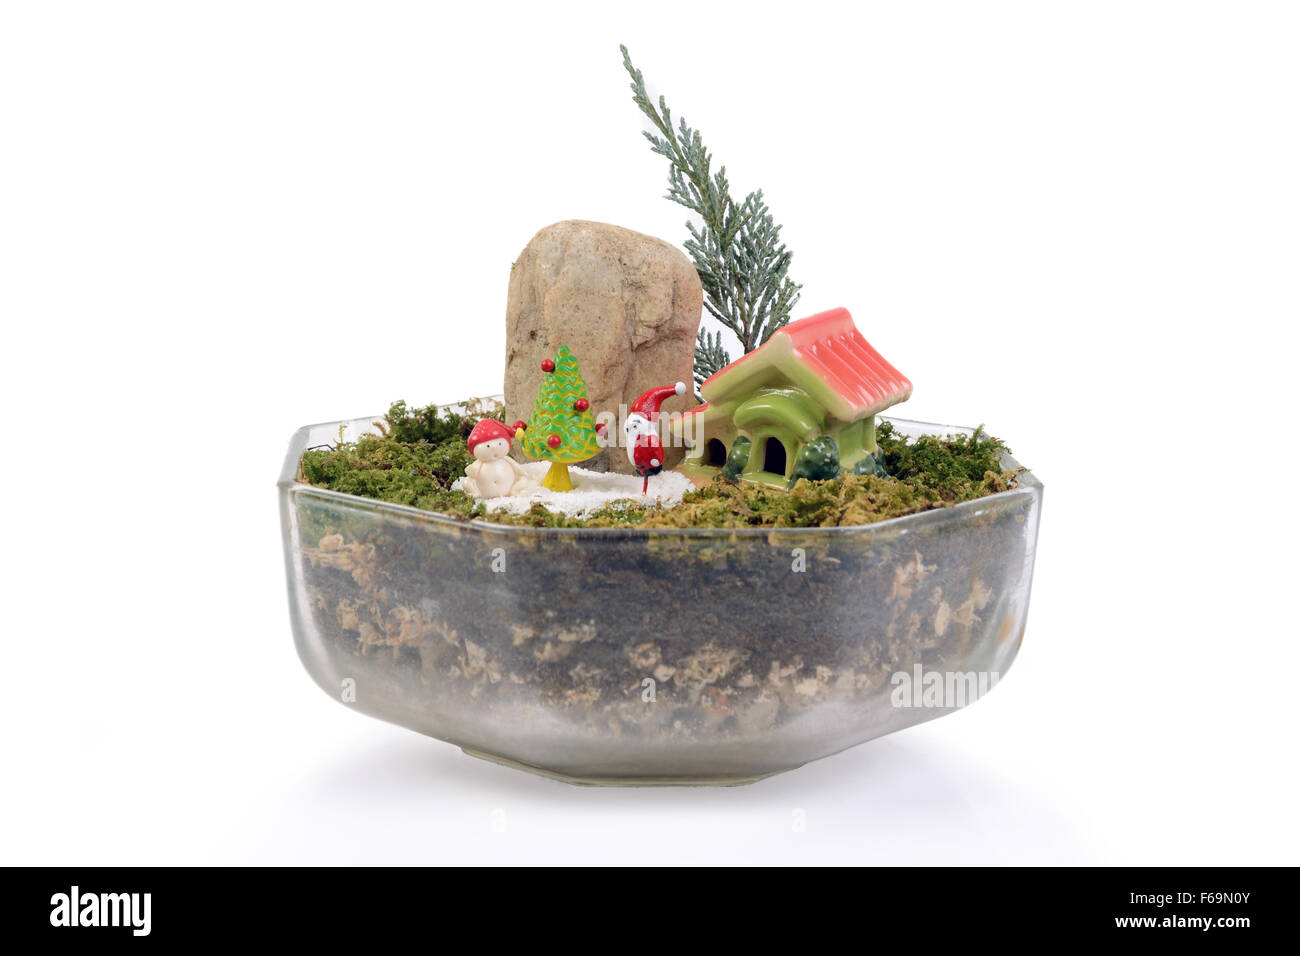 Kleiner Garten in Glasschüssel von Püppchen von Santa Claus Weihnachten dekoriert. Stockfoto